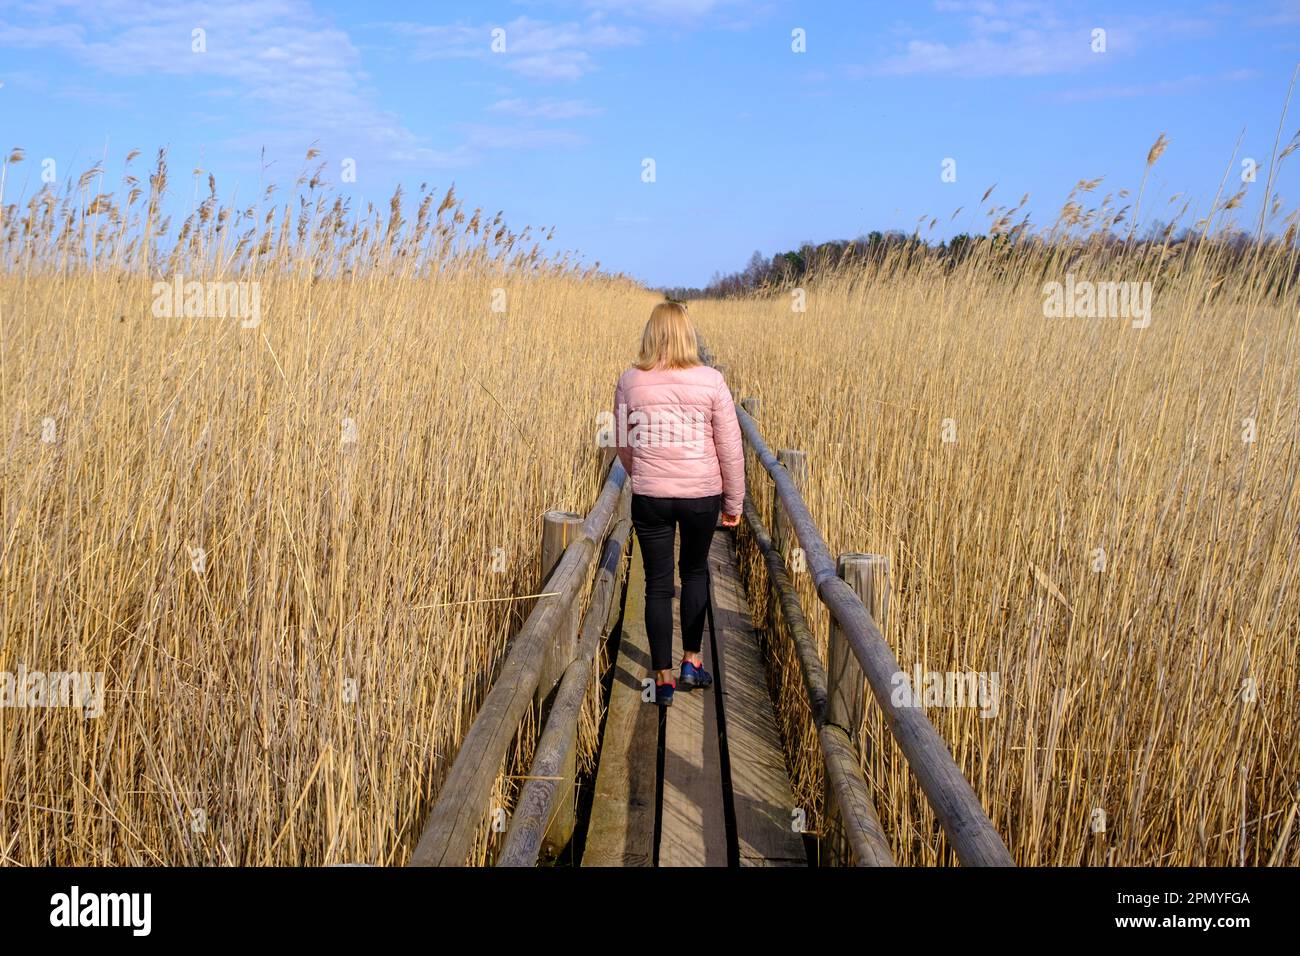 Reed Trail am Kaniera See. Wunderschöne Landschaft mit Holzsteg für Fußgänger. Frühling in Lettland. Eine Frau geht an einem hölzernen Touristenpa entlang Stockfoto